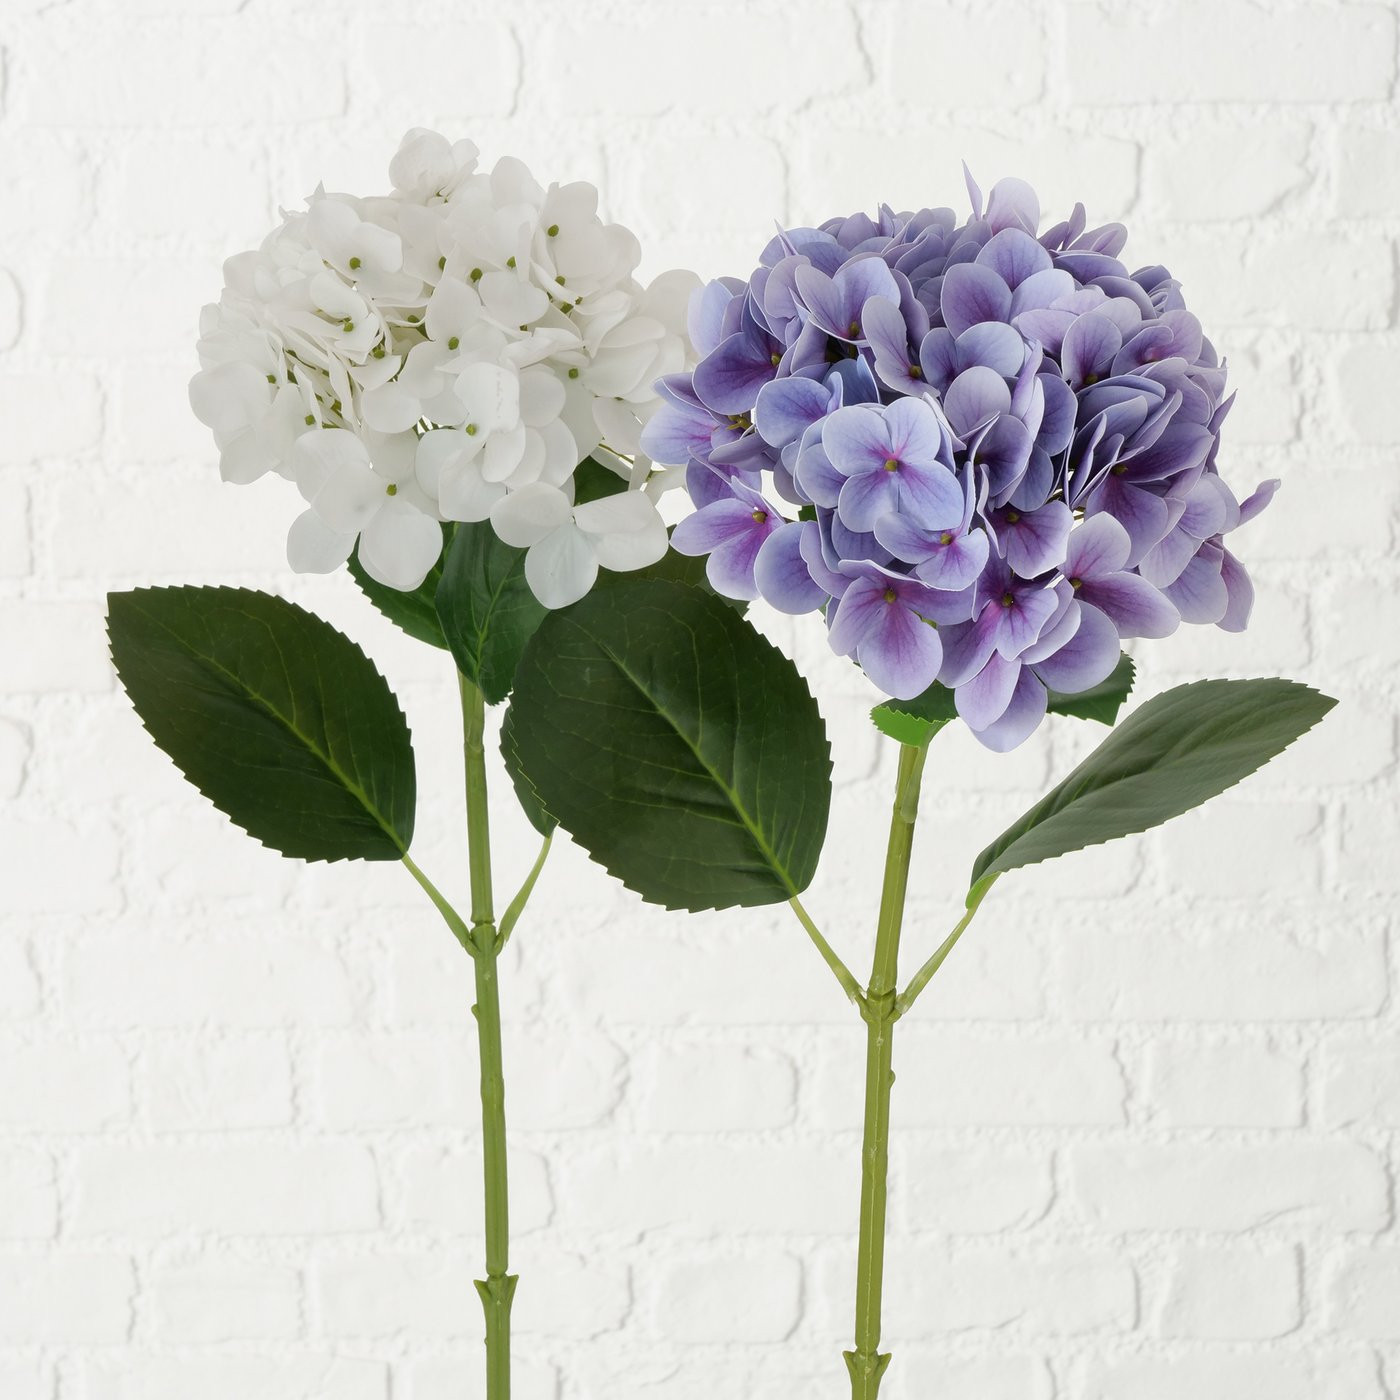 Køb dine kunstige hortensia fra Boltze hos Nordic Nesting